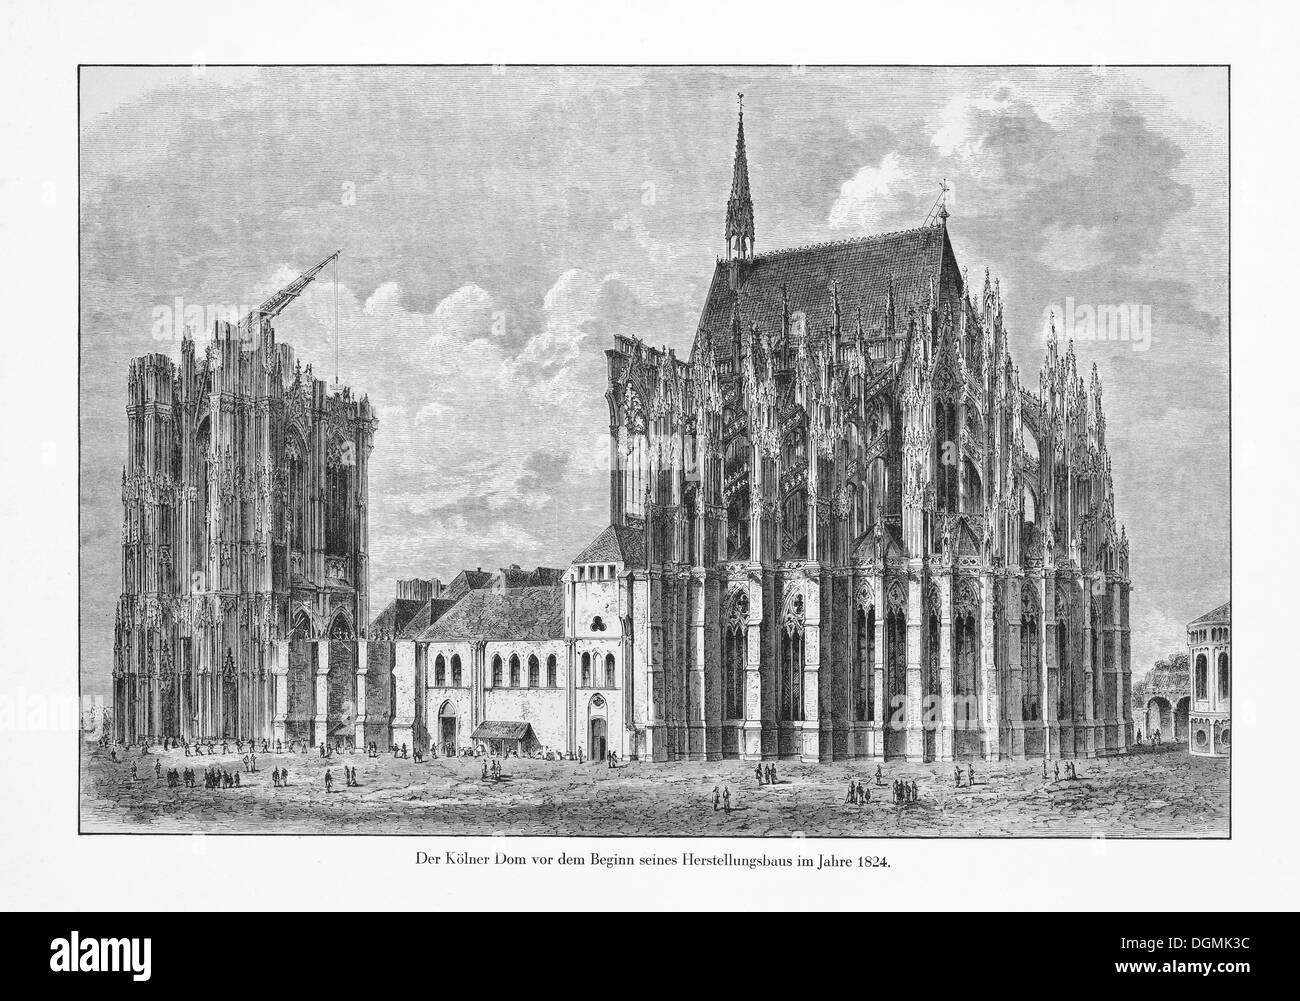 Gravure historique, la cathédrale de Cologne en 1824, romantique, l'historicisme, Site du patrimoine culturel mondial de l'UNESCO Banque D'Images